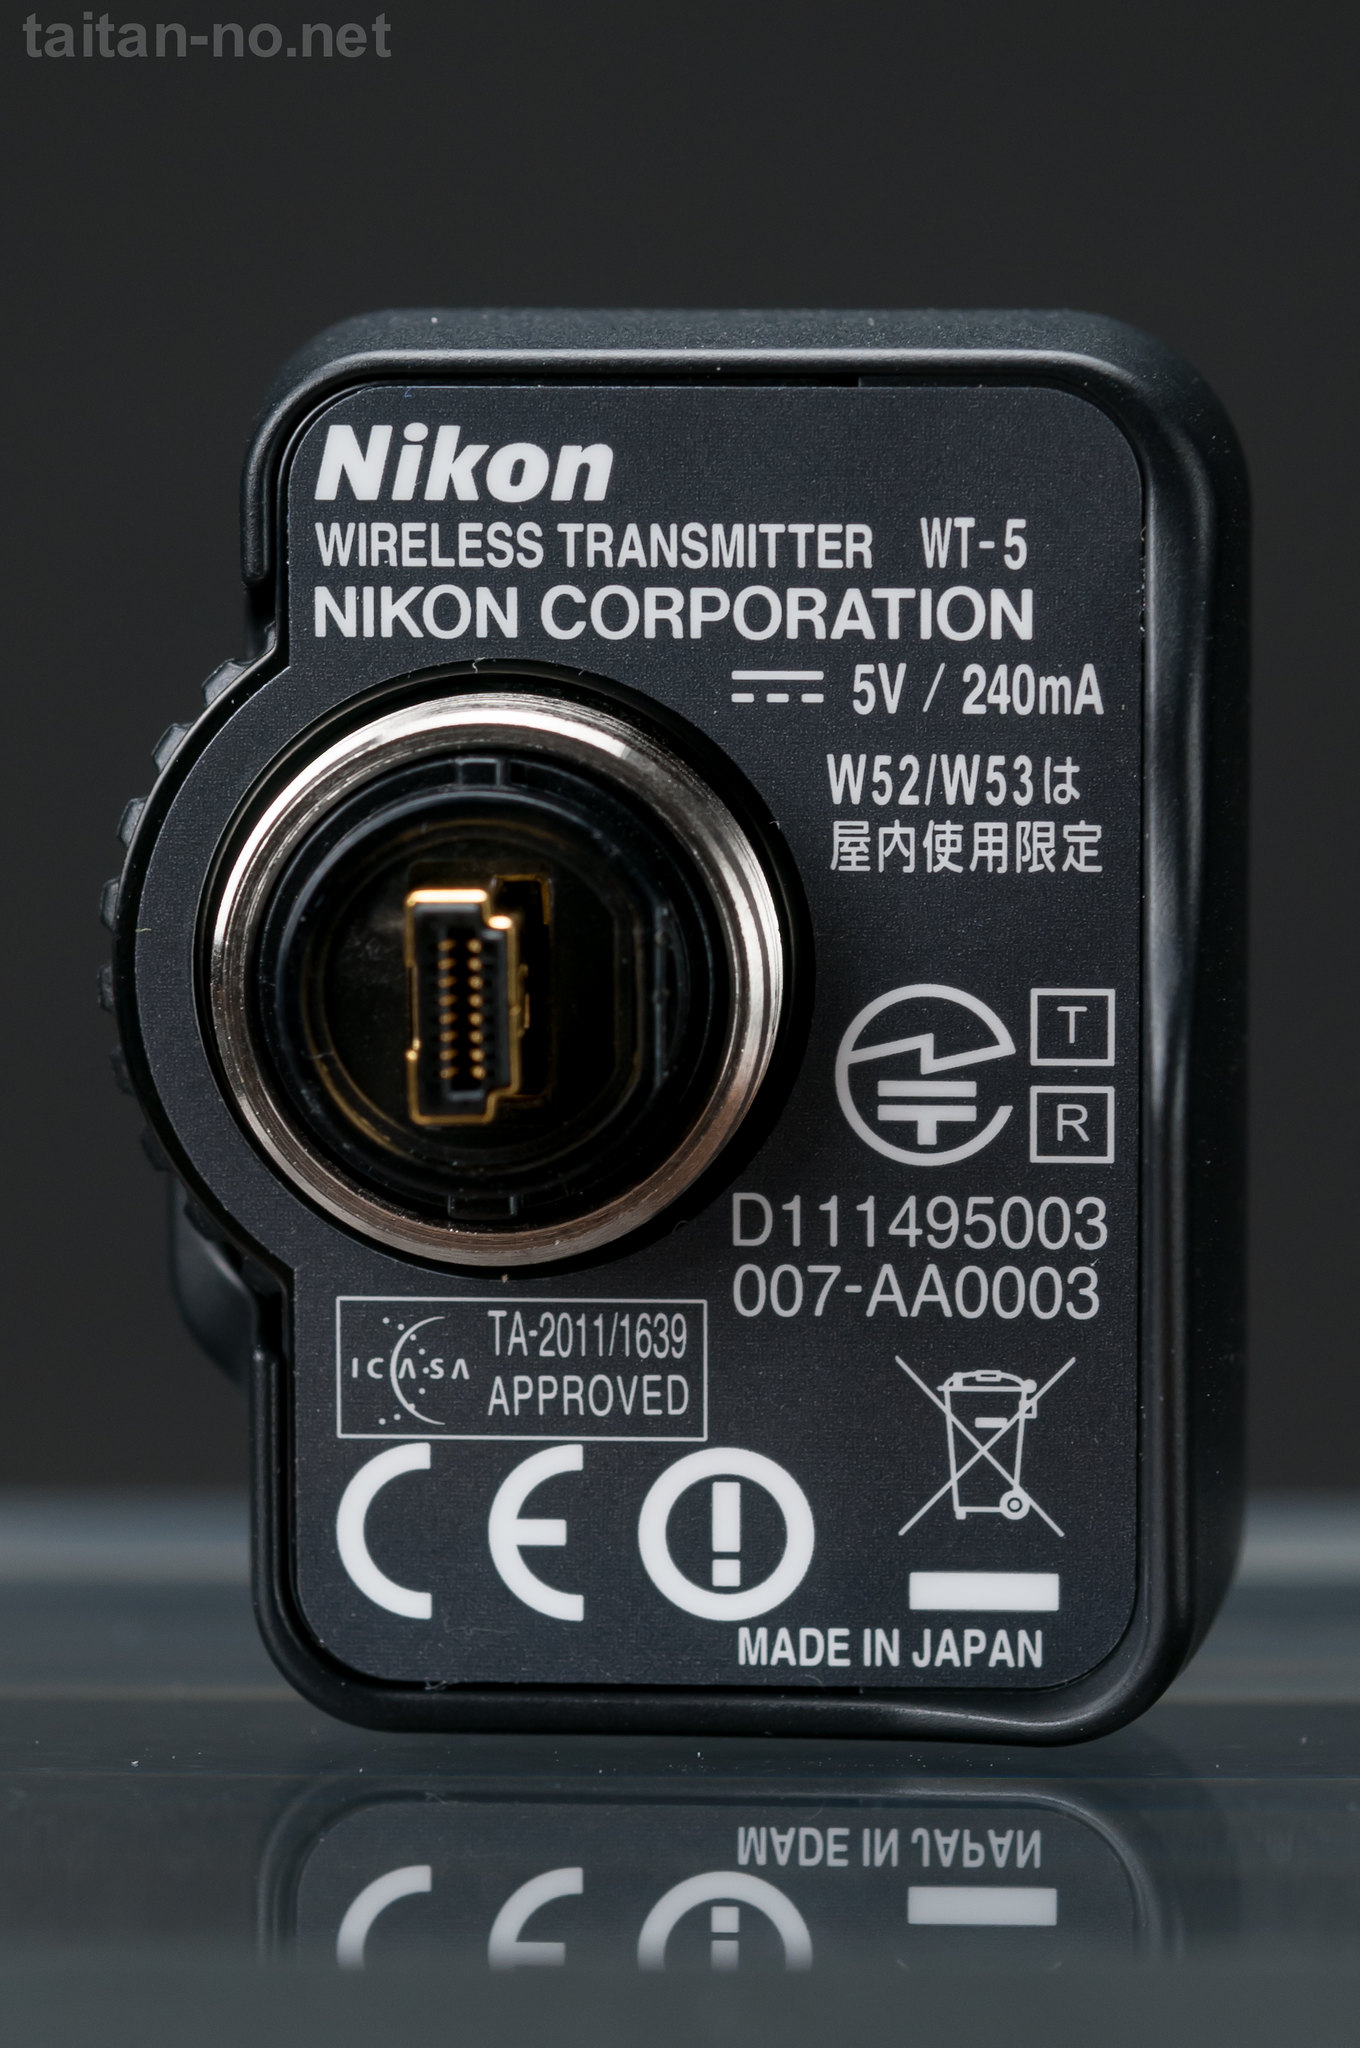 たいたんnoページ | Nikon ワイヤレストランスミッター WT-5 レビュー